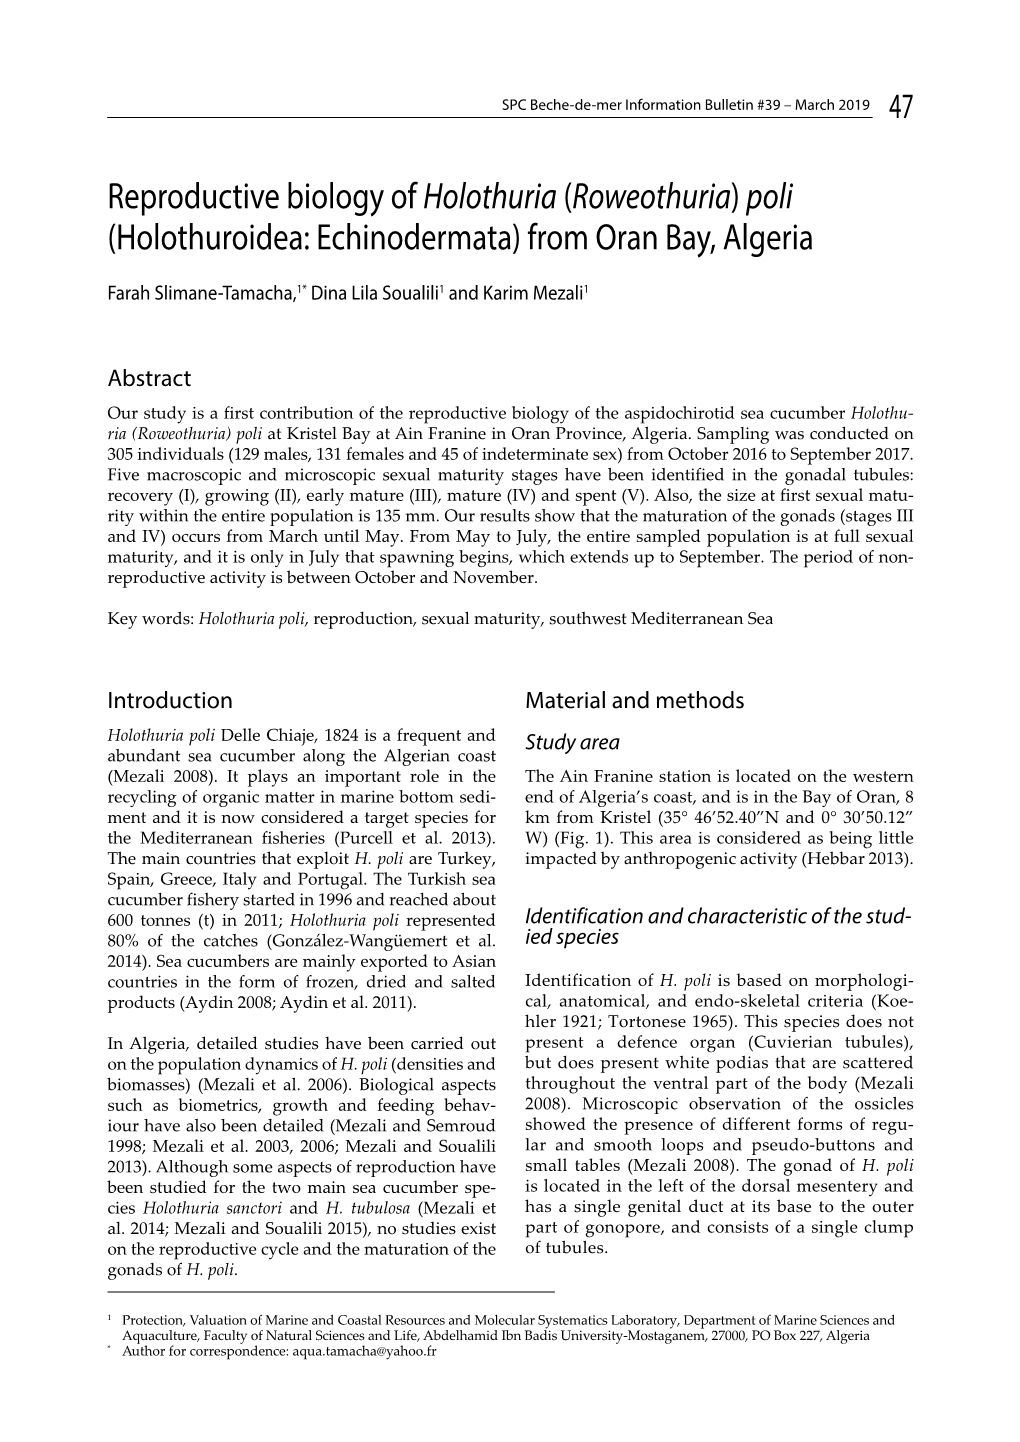 Reproductive Biology of Holothuria (Roweothuria) Poli (Holothuroidea: Echinodermata) from Oran Bay, Algeria